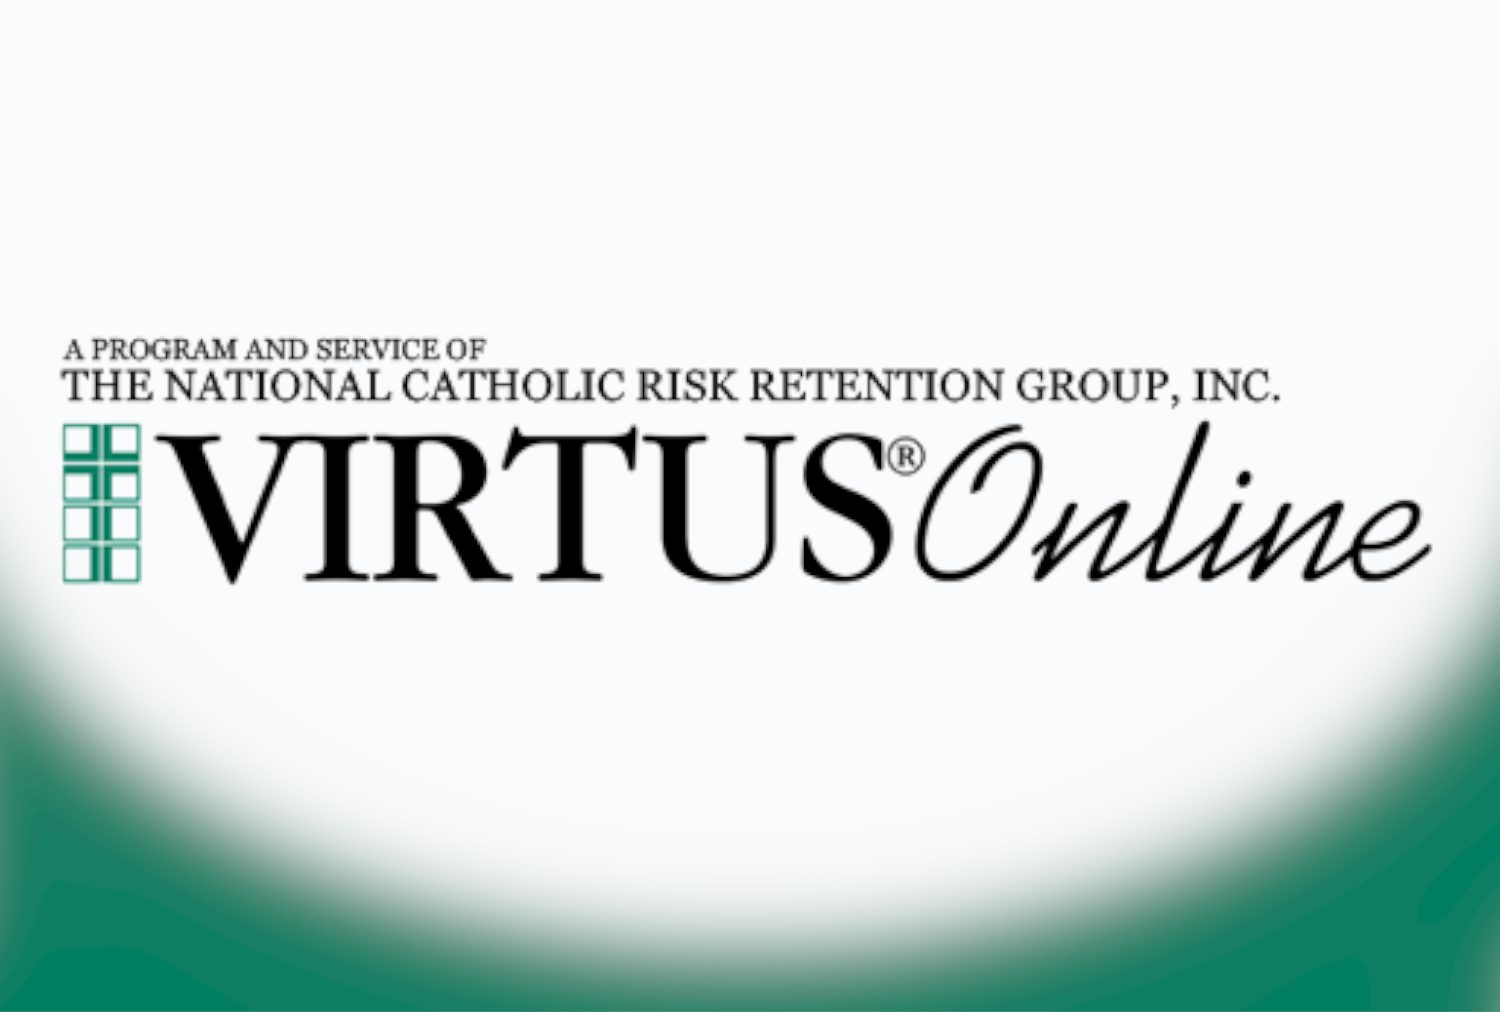 VIRTUS Classes at Saint Benedict